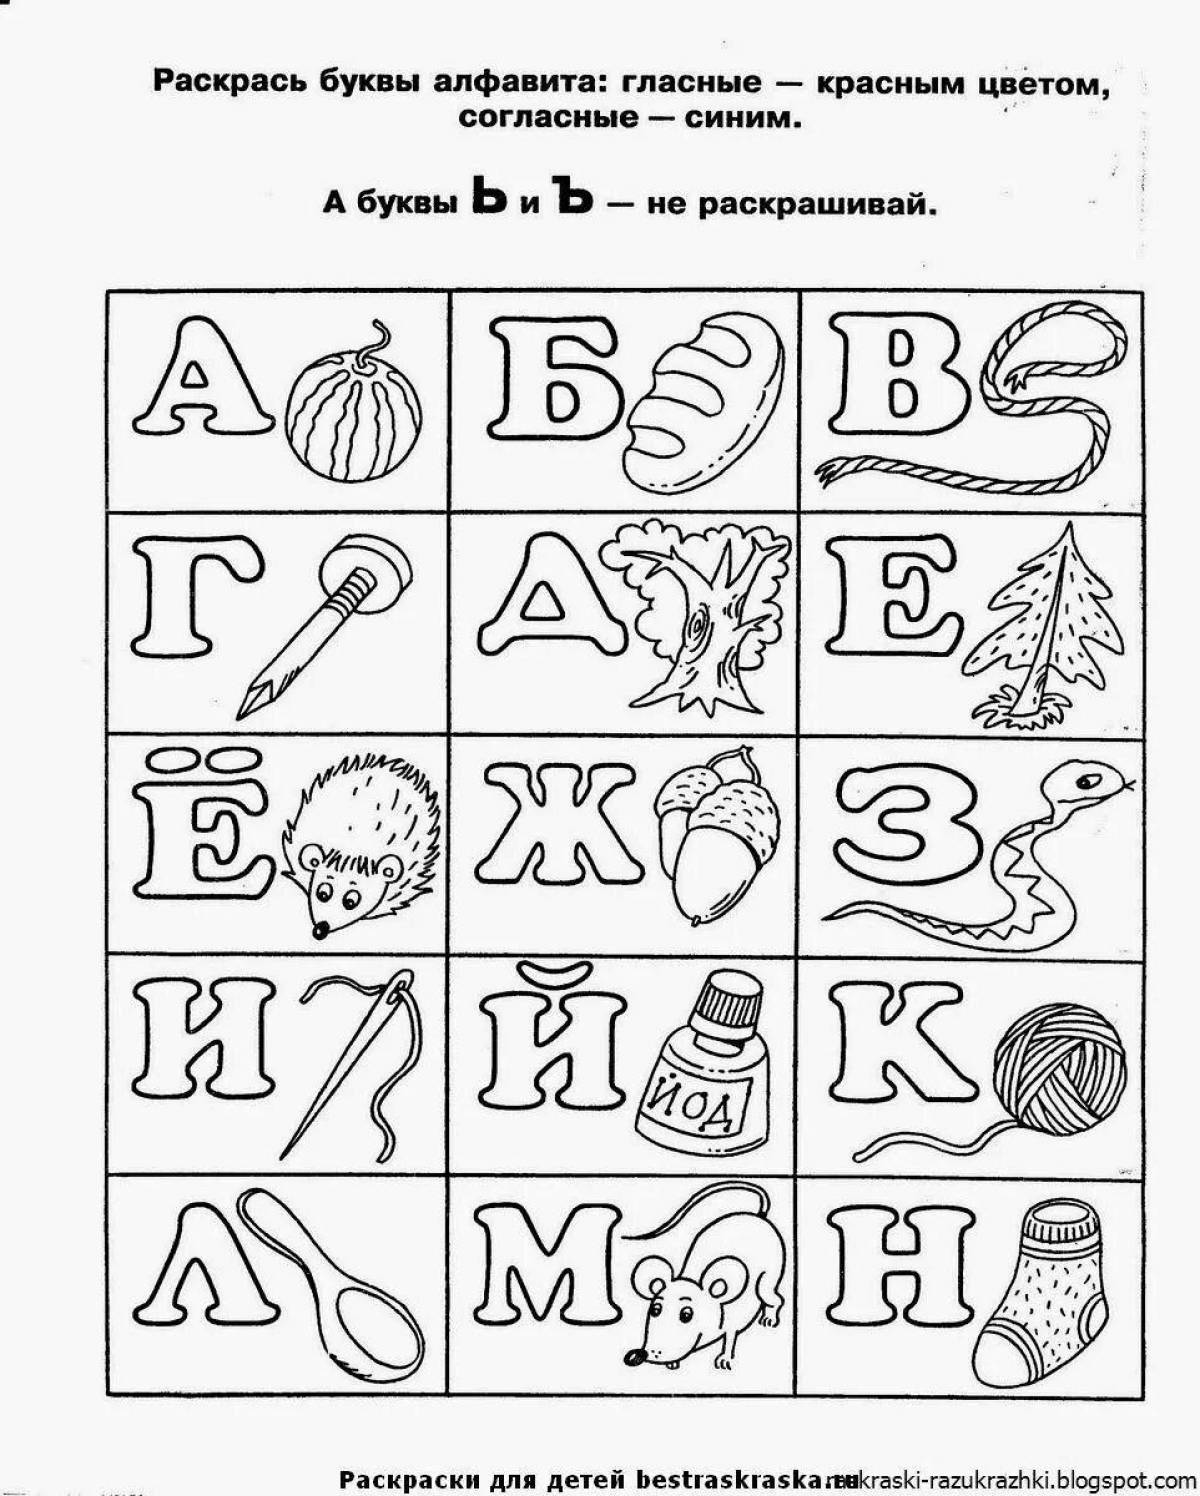 Impressive Russian letter coloring book